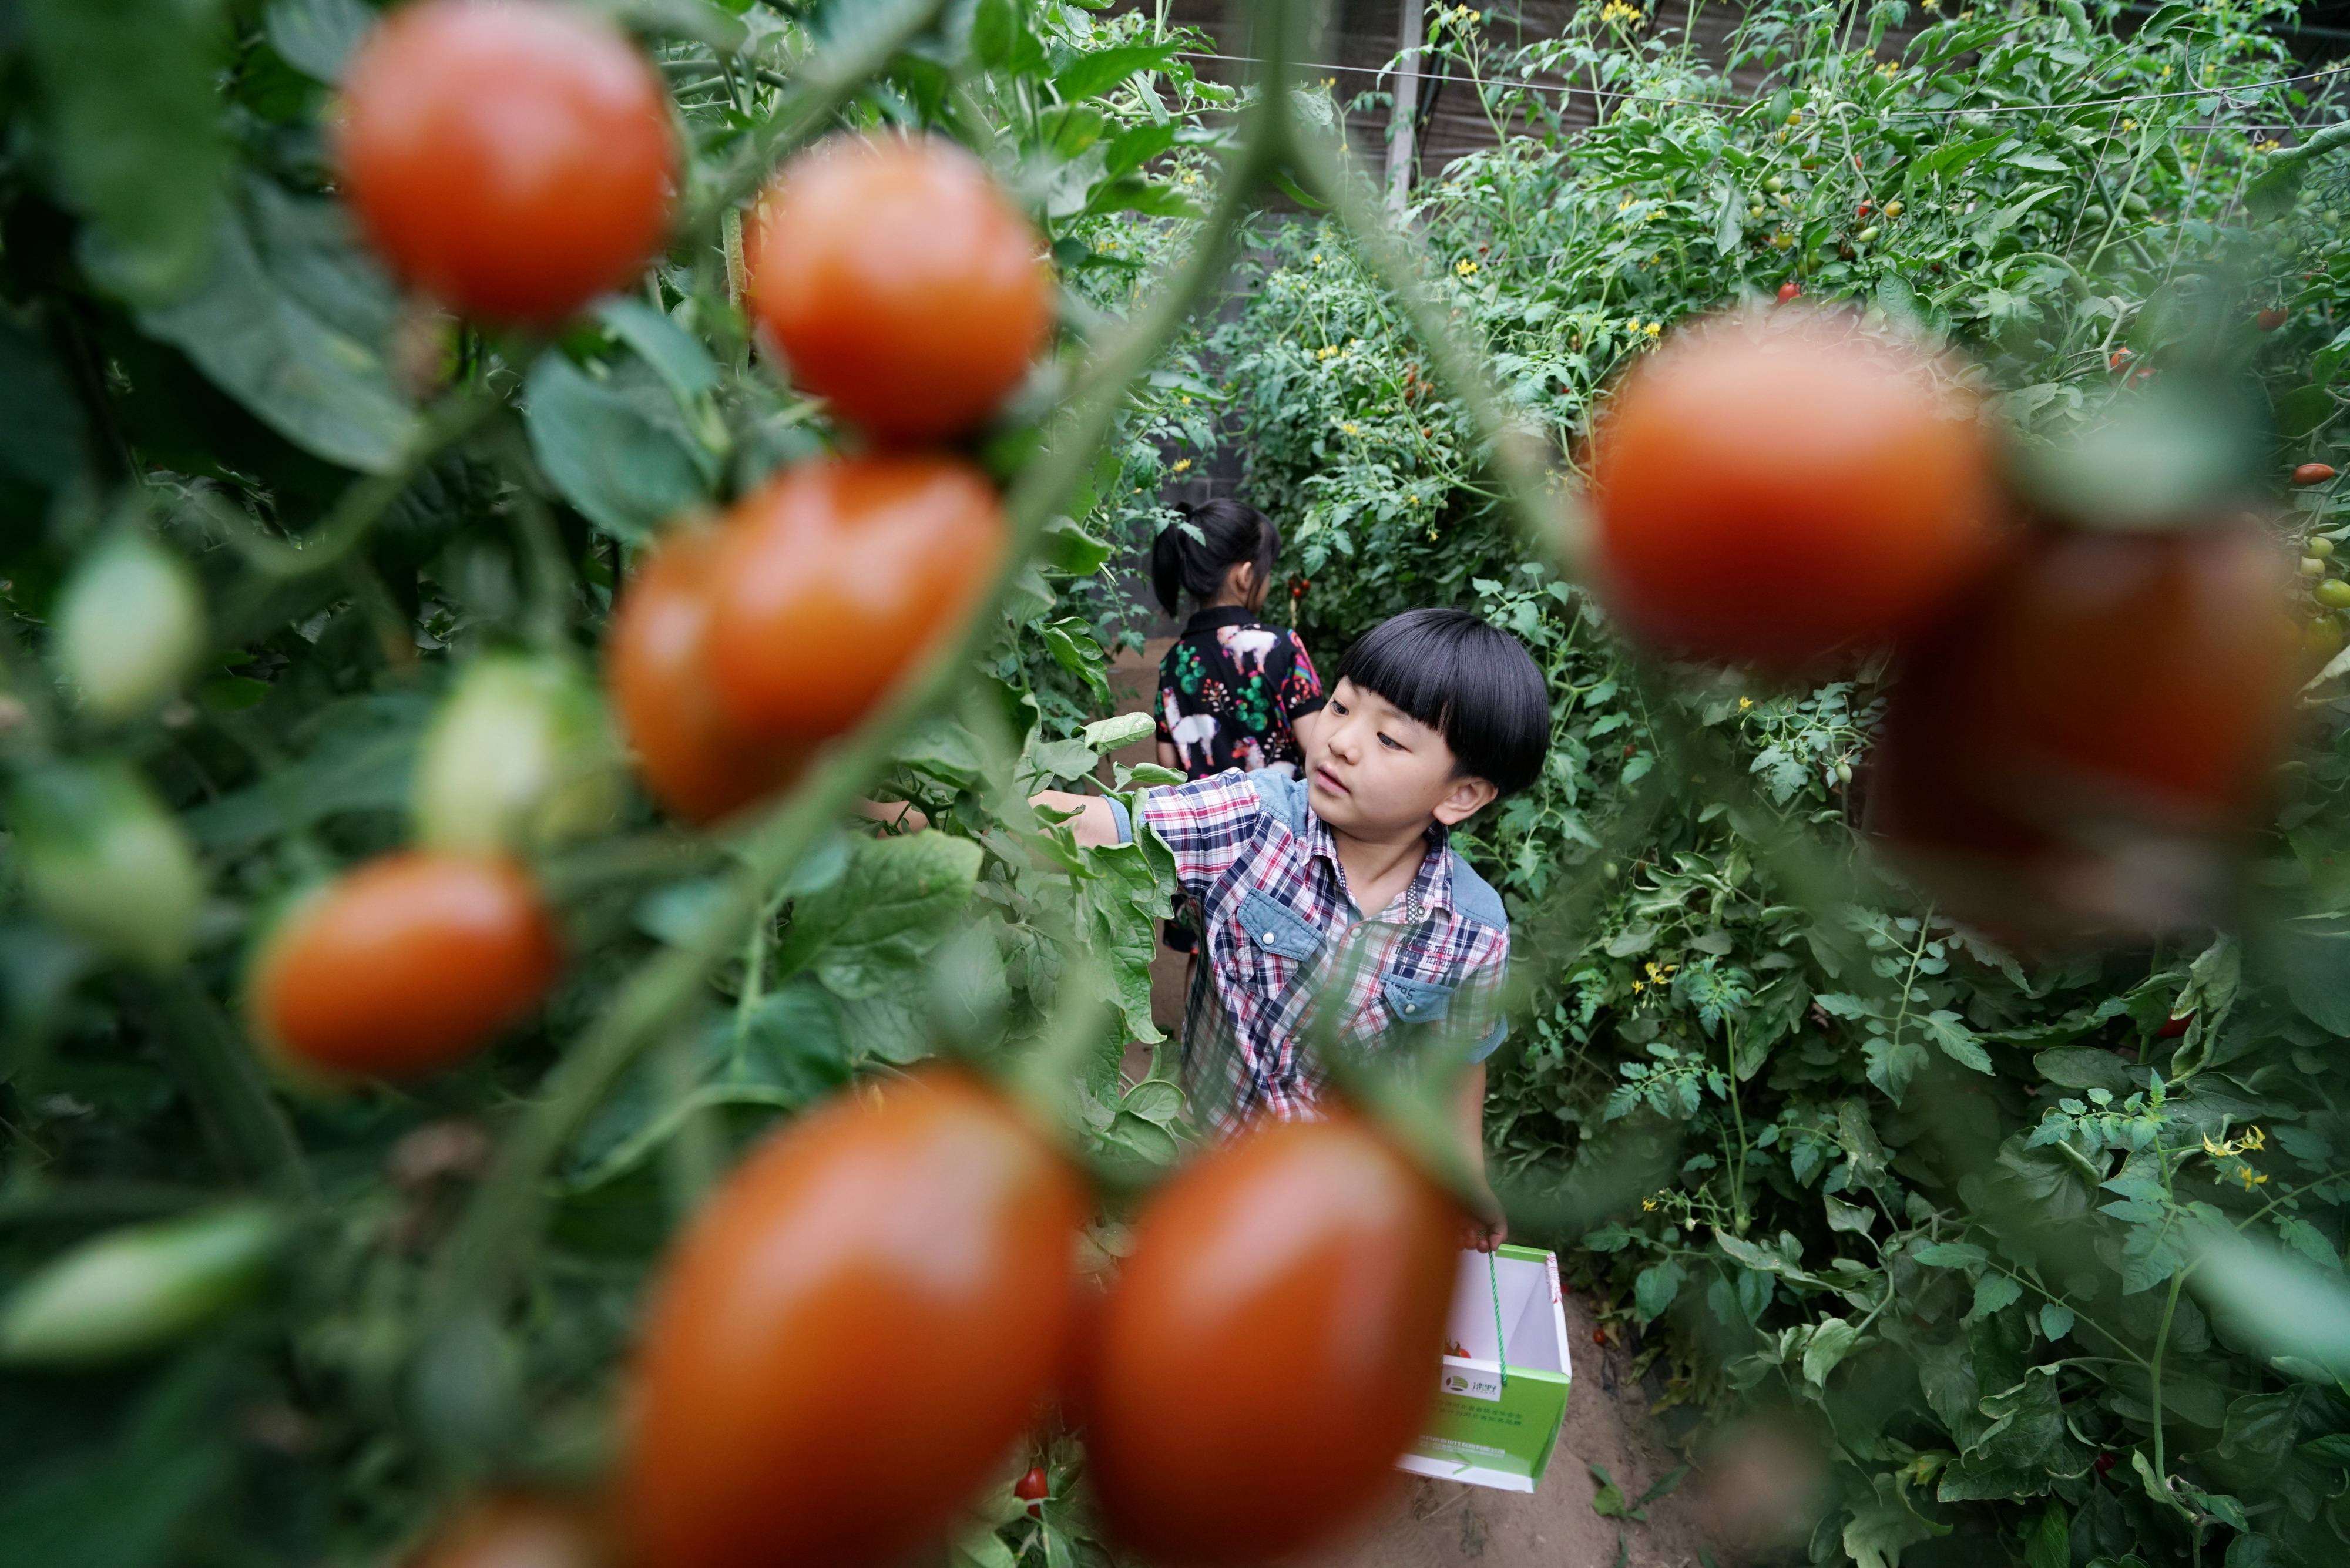 6月21日,小朋友在滦州市雷庄镇吉祥现代农业园区大棚内采摘樱桃西红柿